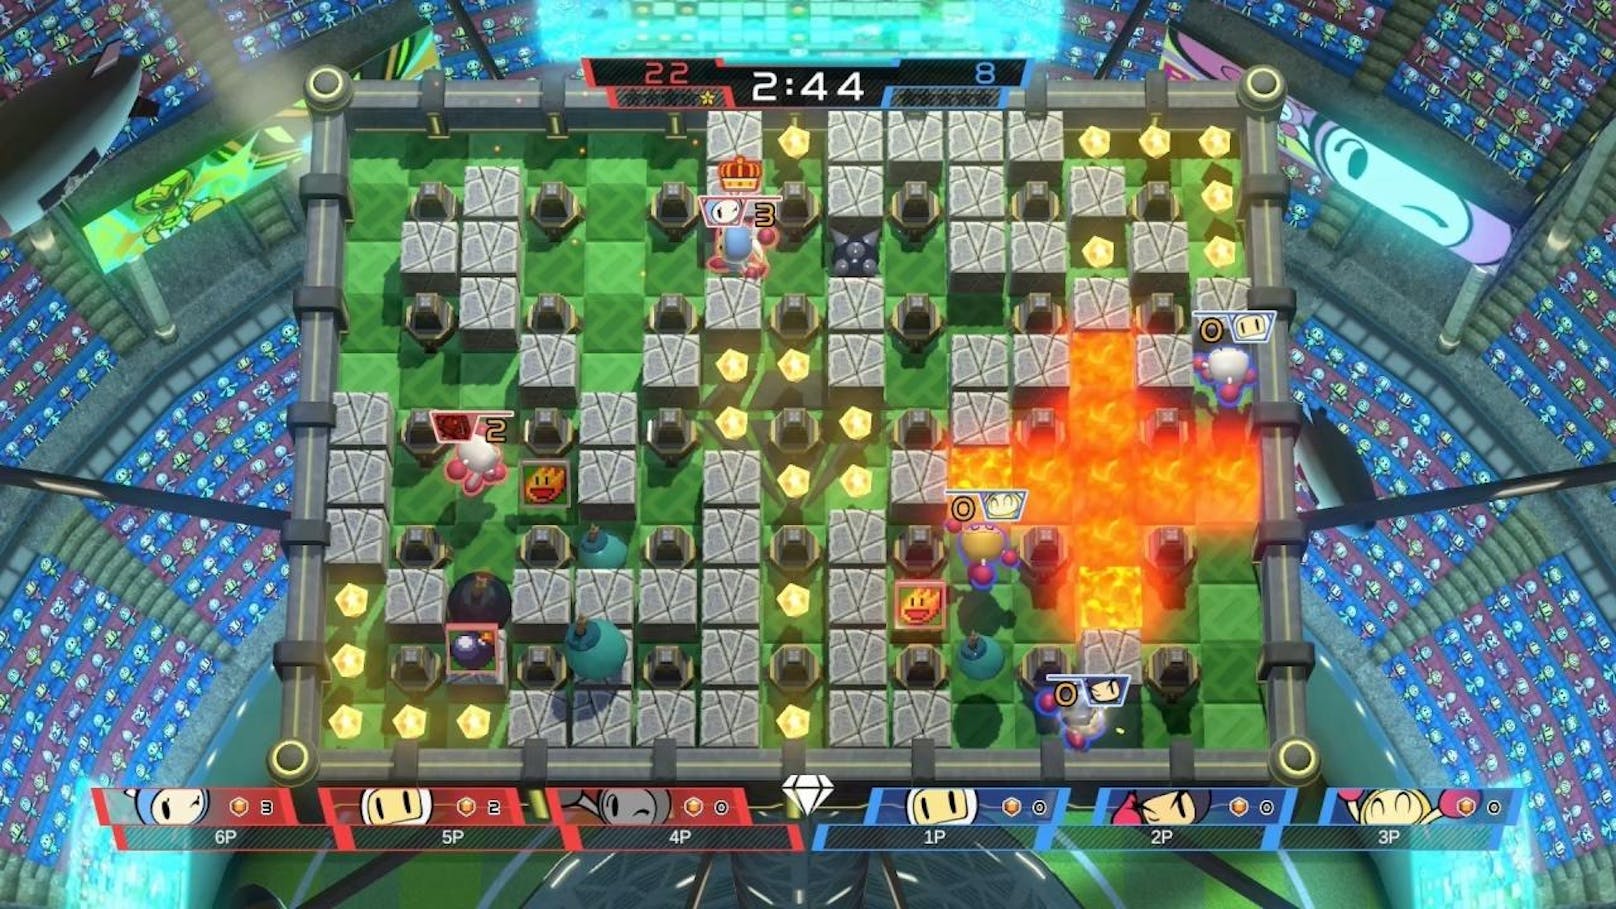 Super Bomberman R erscheint ab 13. Juni für PlayStation 4, Xbox One und PC. In Super Bomberman R können zwei Spieler gleichzeitig im "Story Modus" zusammenarbeiten, um die verschiedenen Level zu meistern. Die Spieler lenken ihren Bomberman durch ein labyrinthähnliches Spielareal und zünden Bomben, um innerhalb einer bestimmten Zeit Wege zu öffnen und Kontrahenten oder die CPU-gesteuerten Feinde auszuschalten. Während sich im "Battle Modus" bis zu acht Spieler lokal oder online gegenseitig bekämpfen, können sich die Spieler im wettbewerbsorientierten "Grand Prix Modus" mit bis zu drei anderen Spielern zusammenschließen und gegen andere Teams antreten.